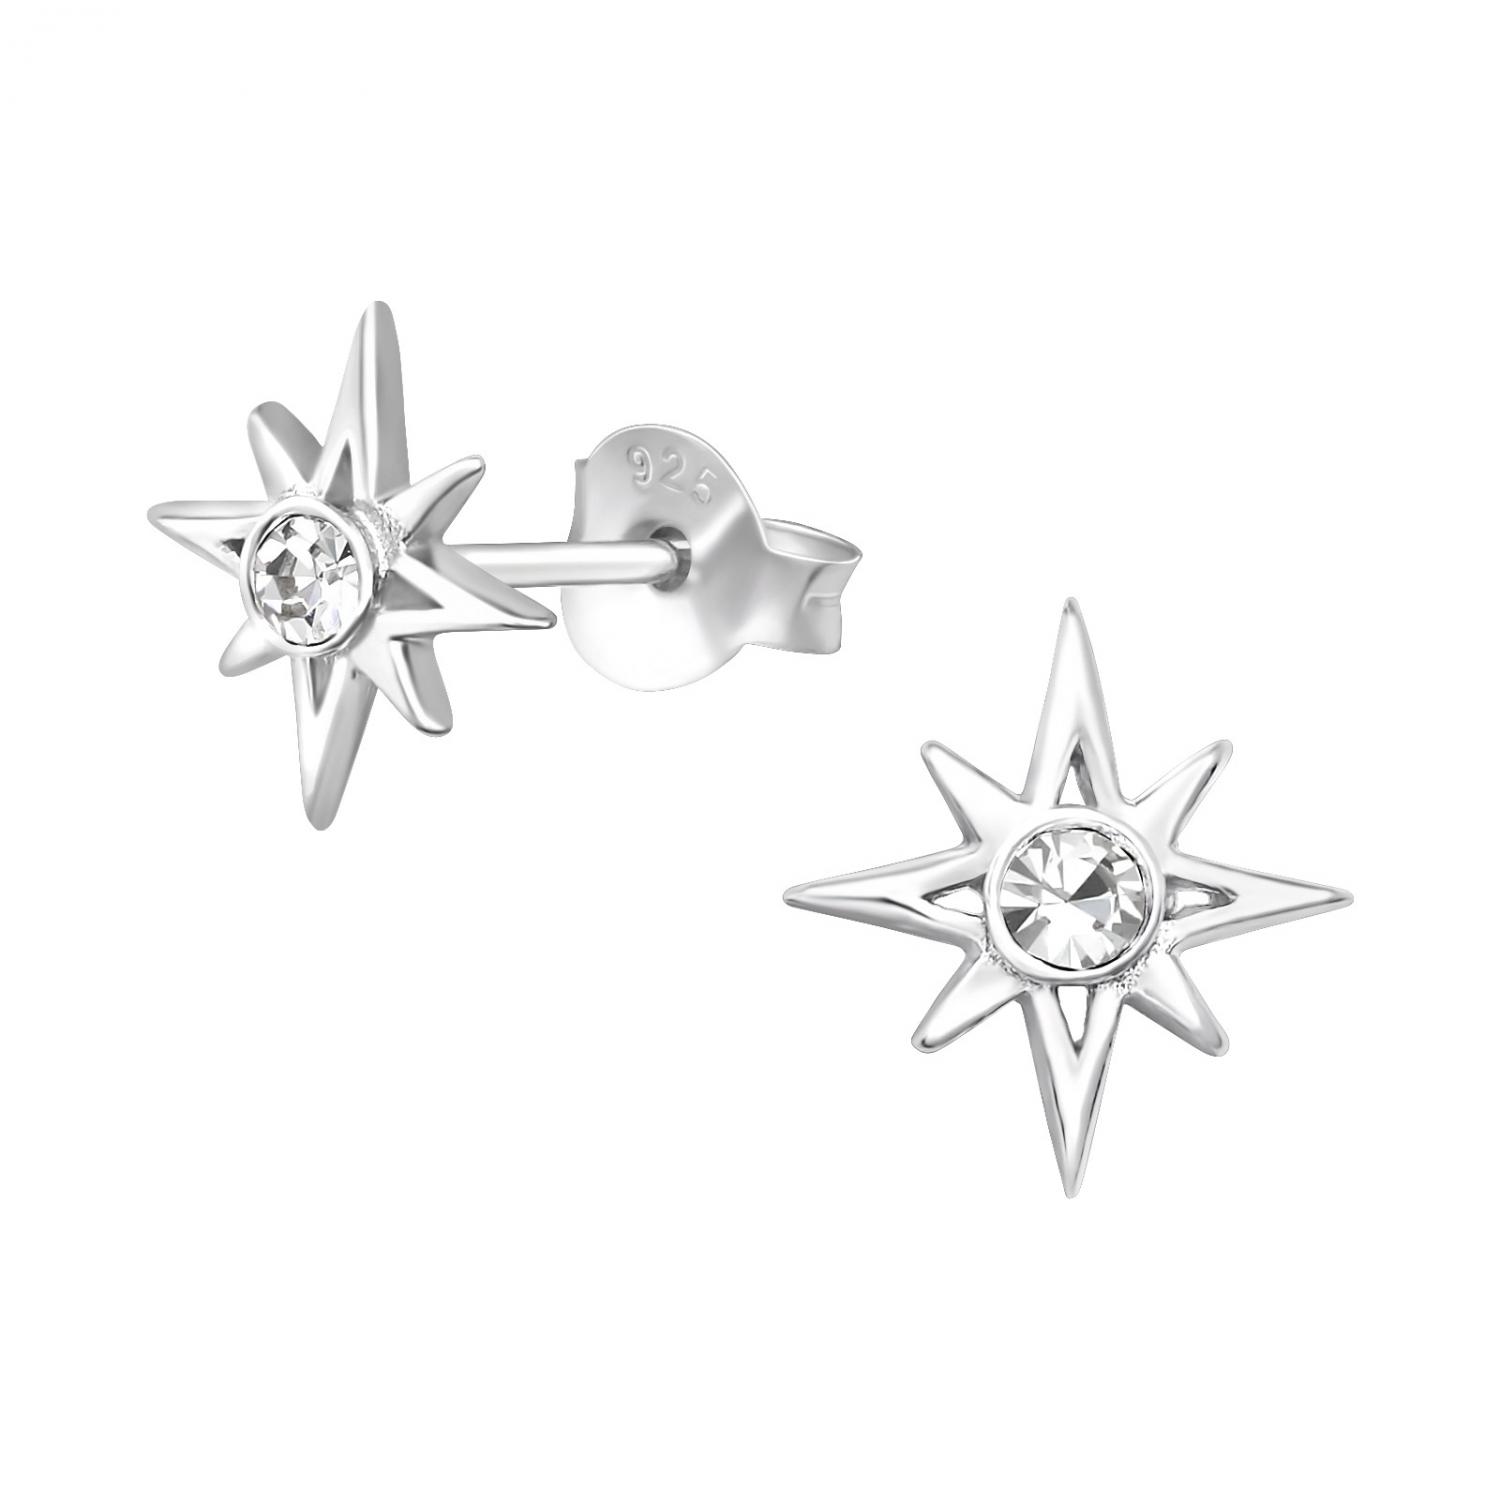 Stjärnor med kristall - Studs - Örhängen i äkta silver